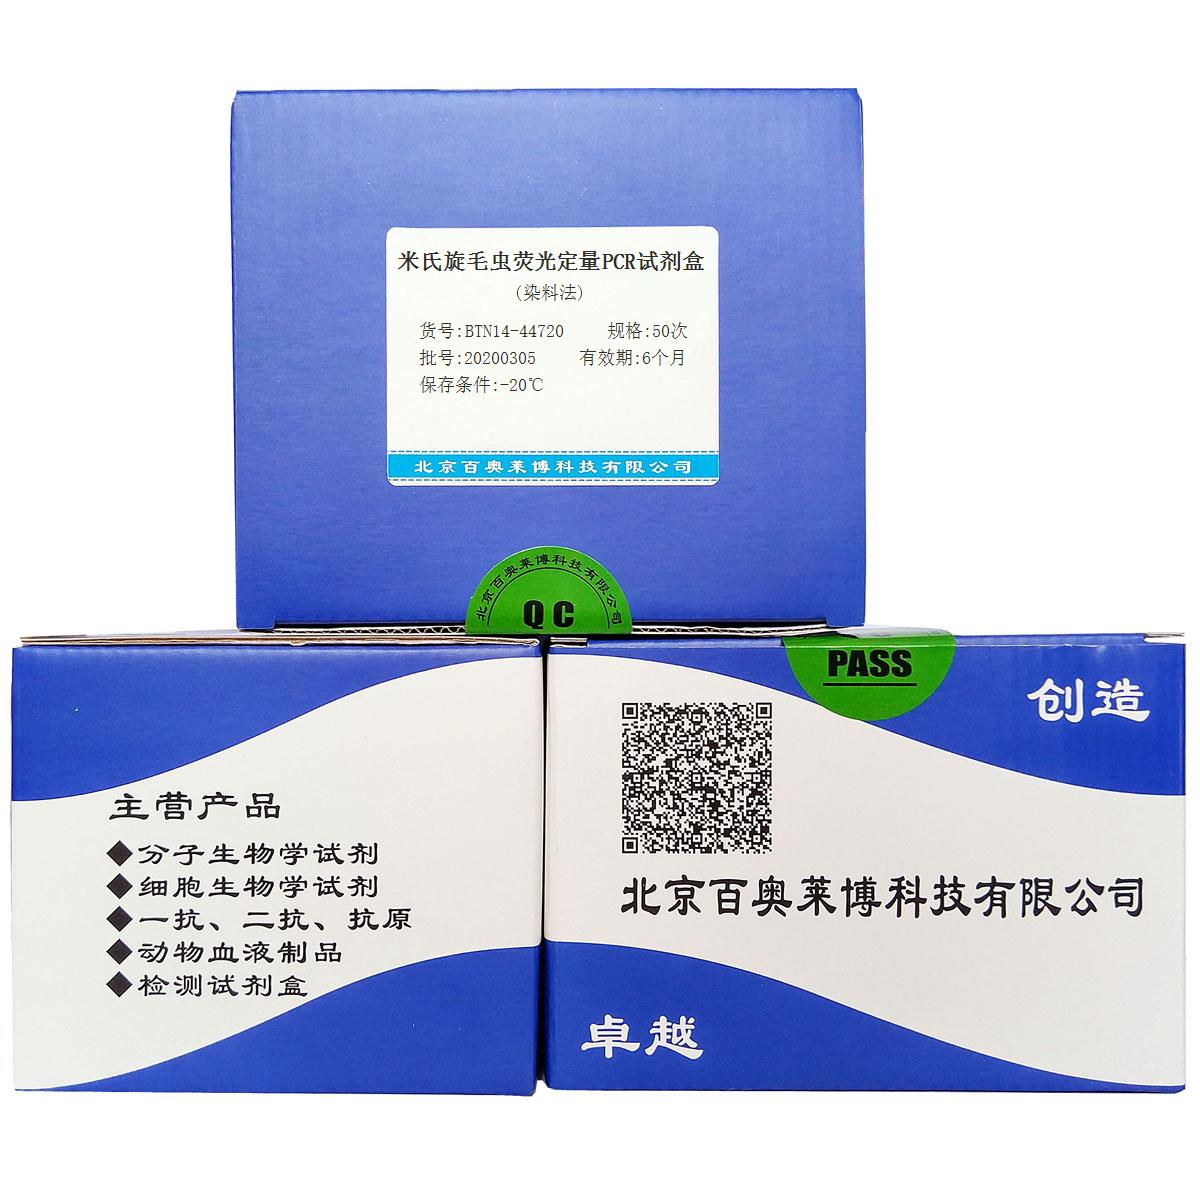 米氏旋毛虫荧光定量PCR试剂盒(染料法)